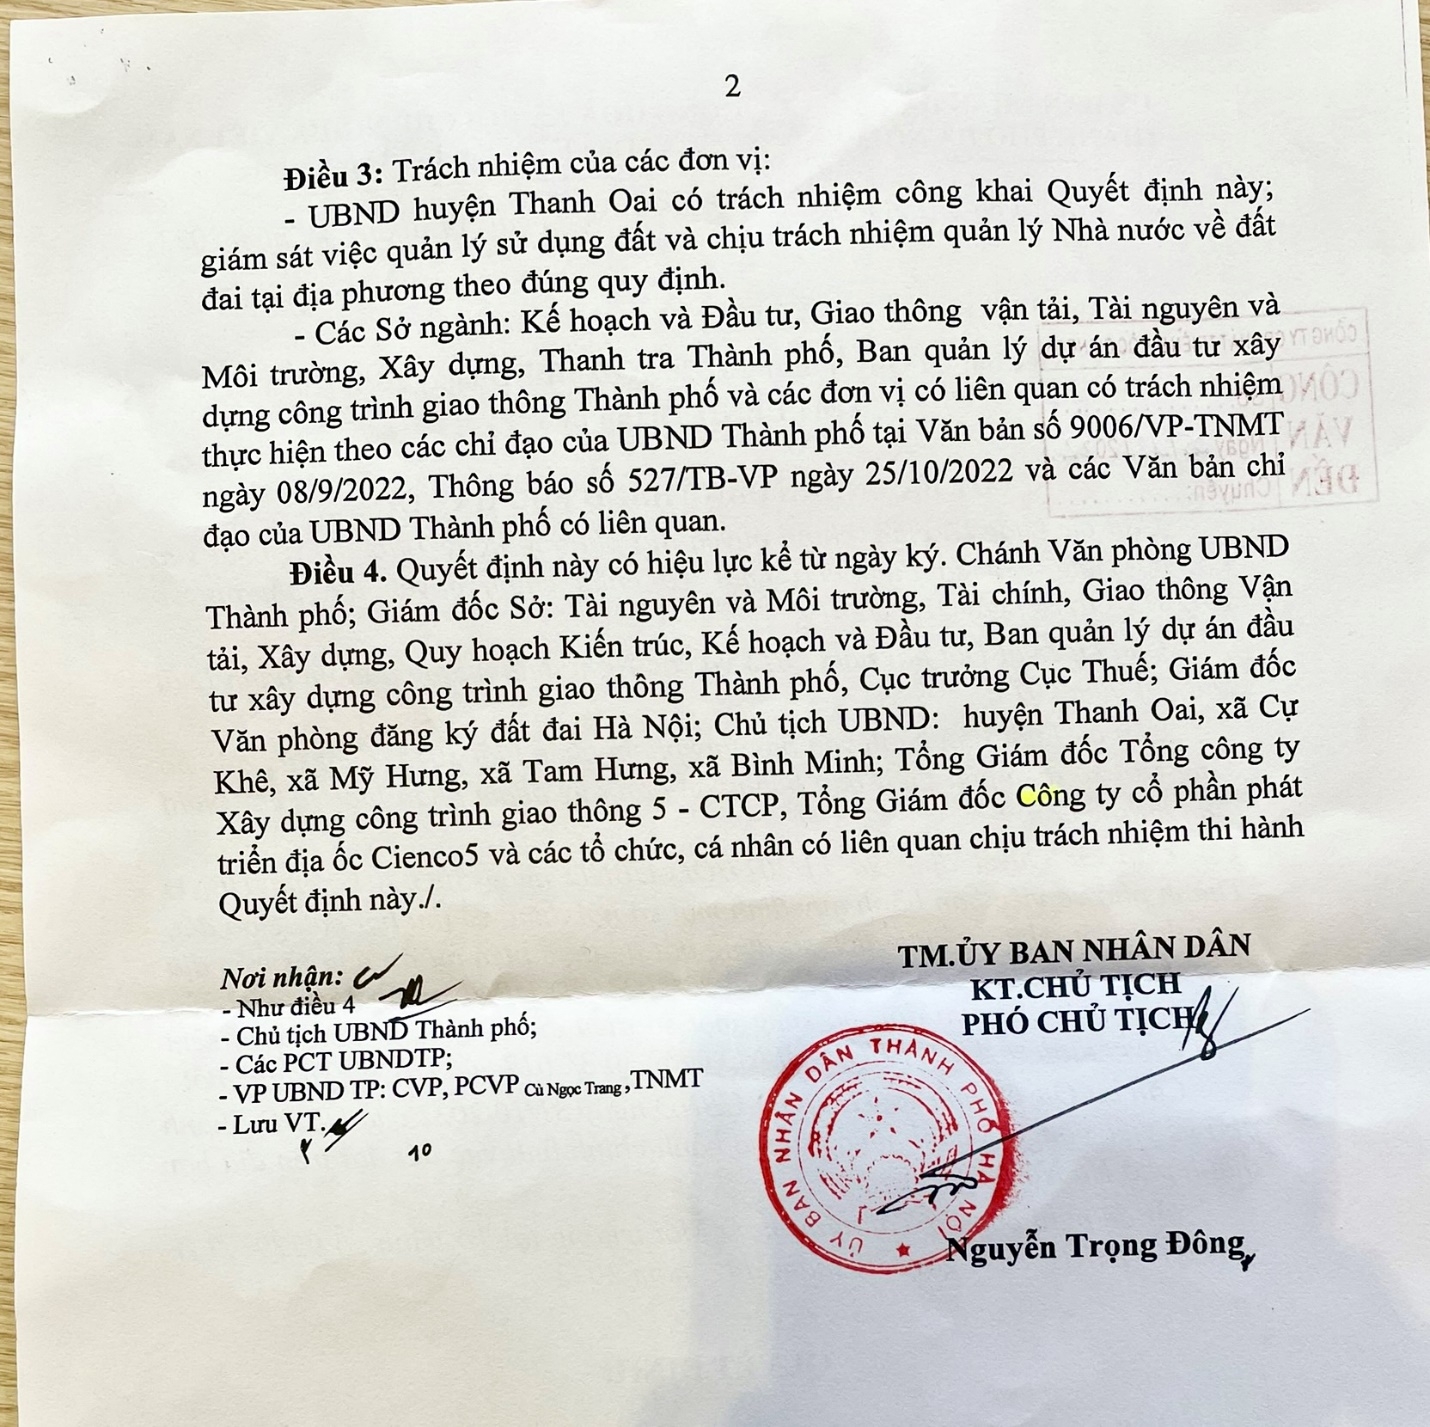 Hà Nội đã bãi bỏ Quyết định điều chỉnh tên người sử dụng đất tại Khu đô thị Thanh Hà - Cienco 5